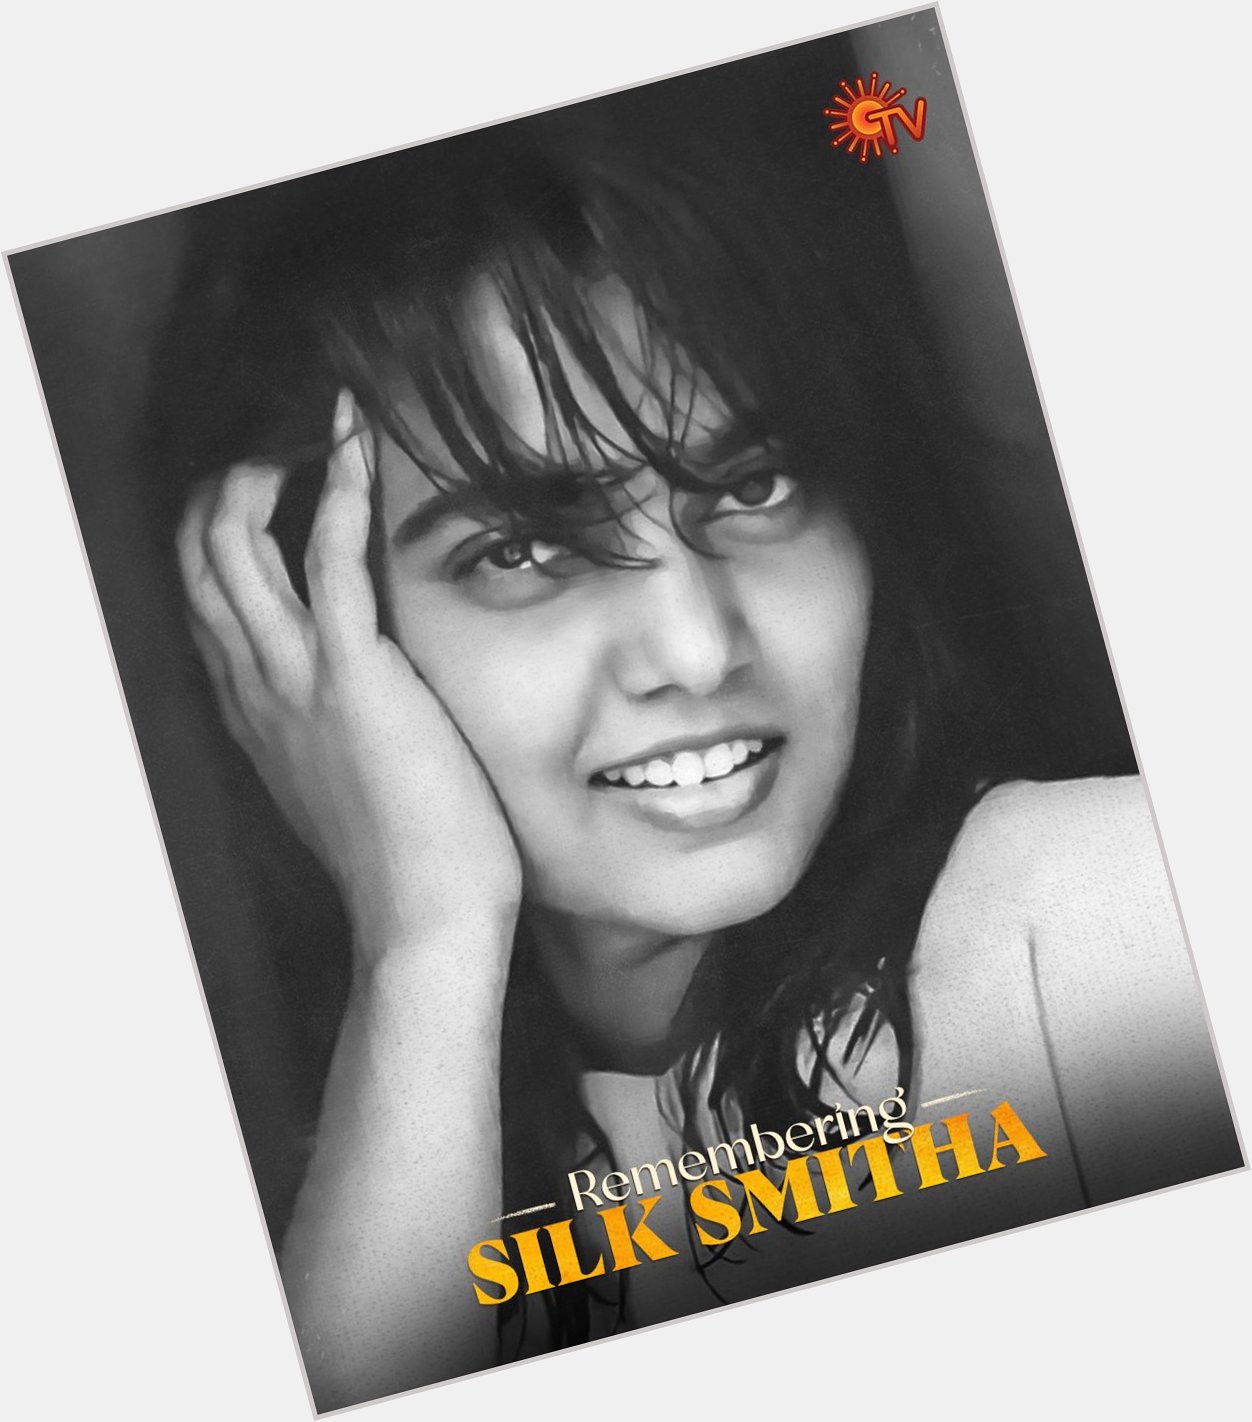 Happy birthday       silk Smitha 